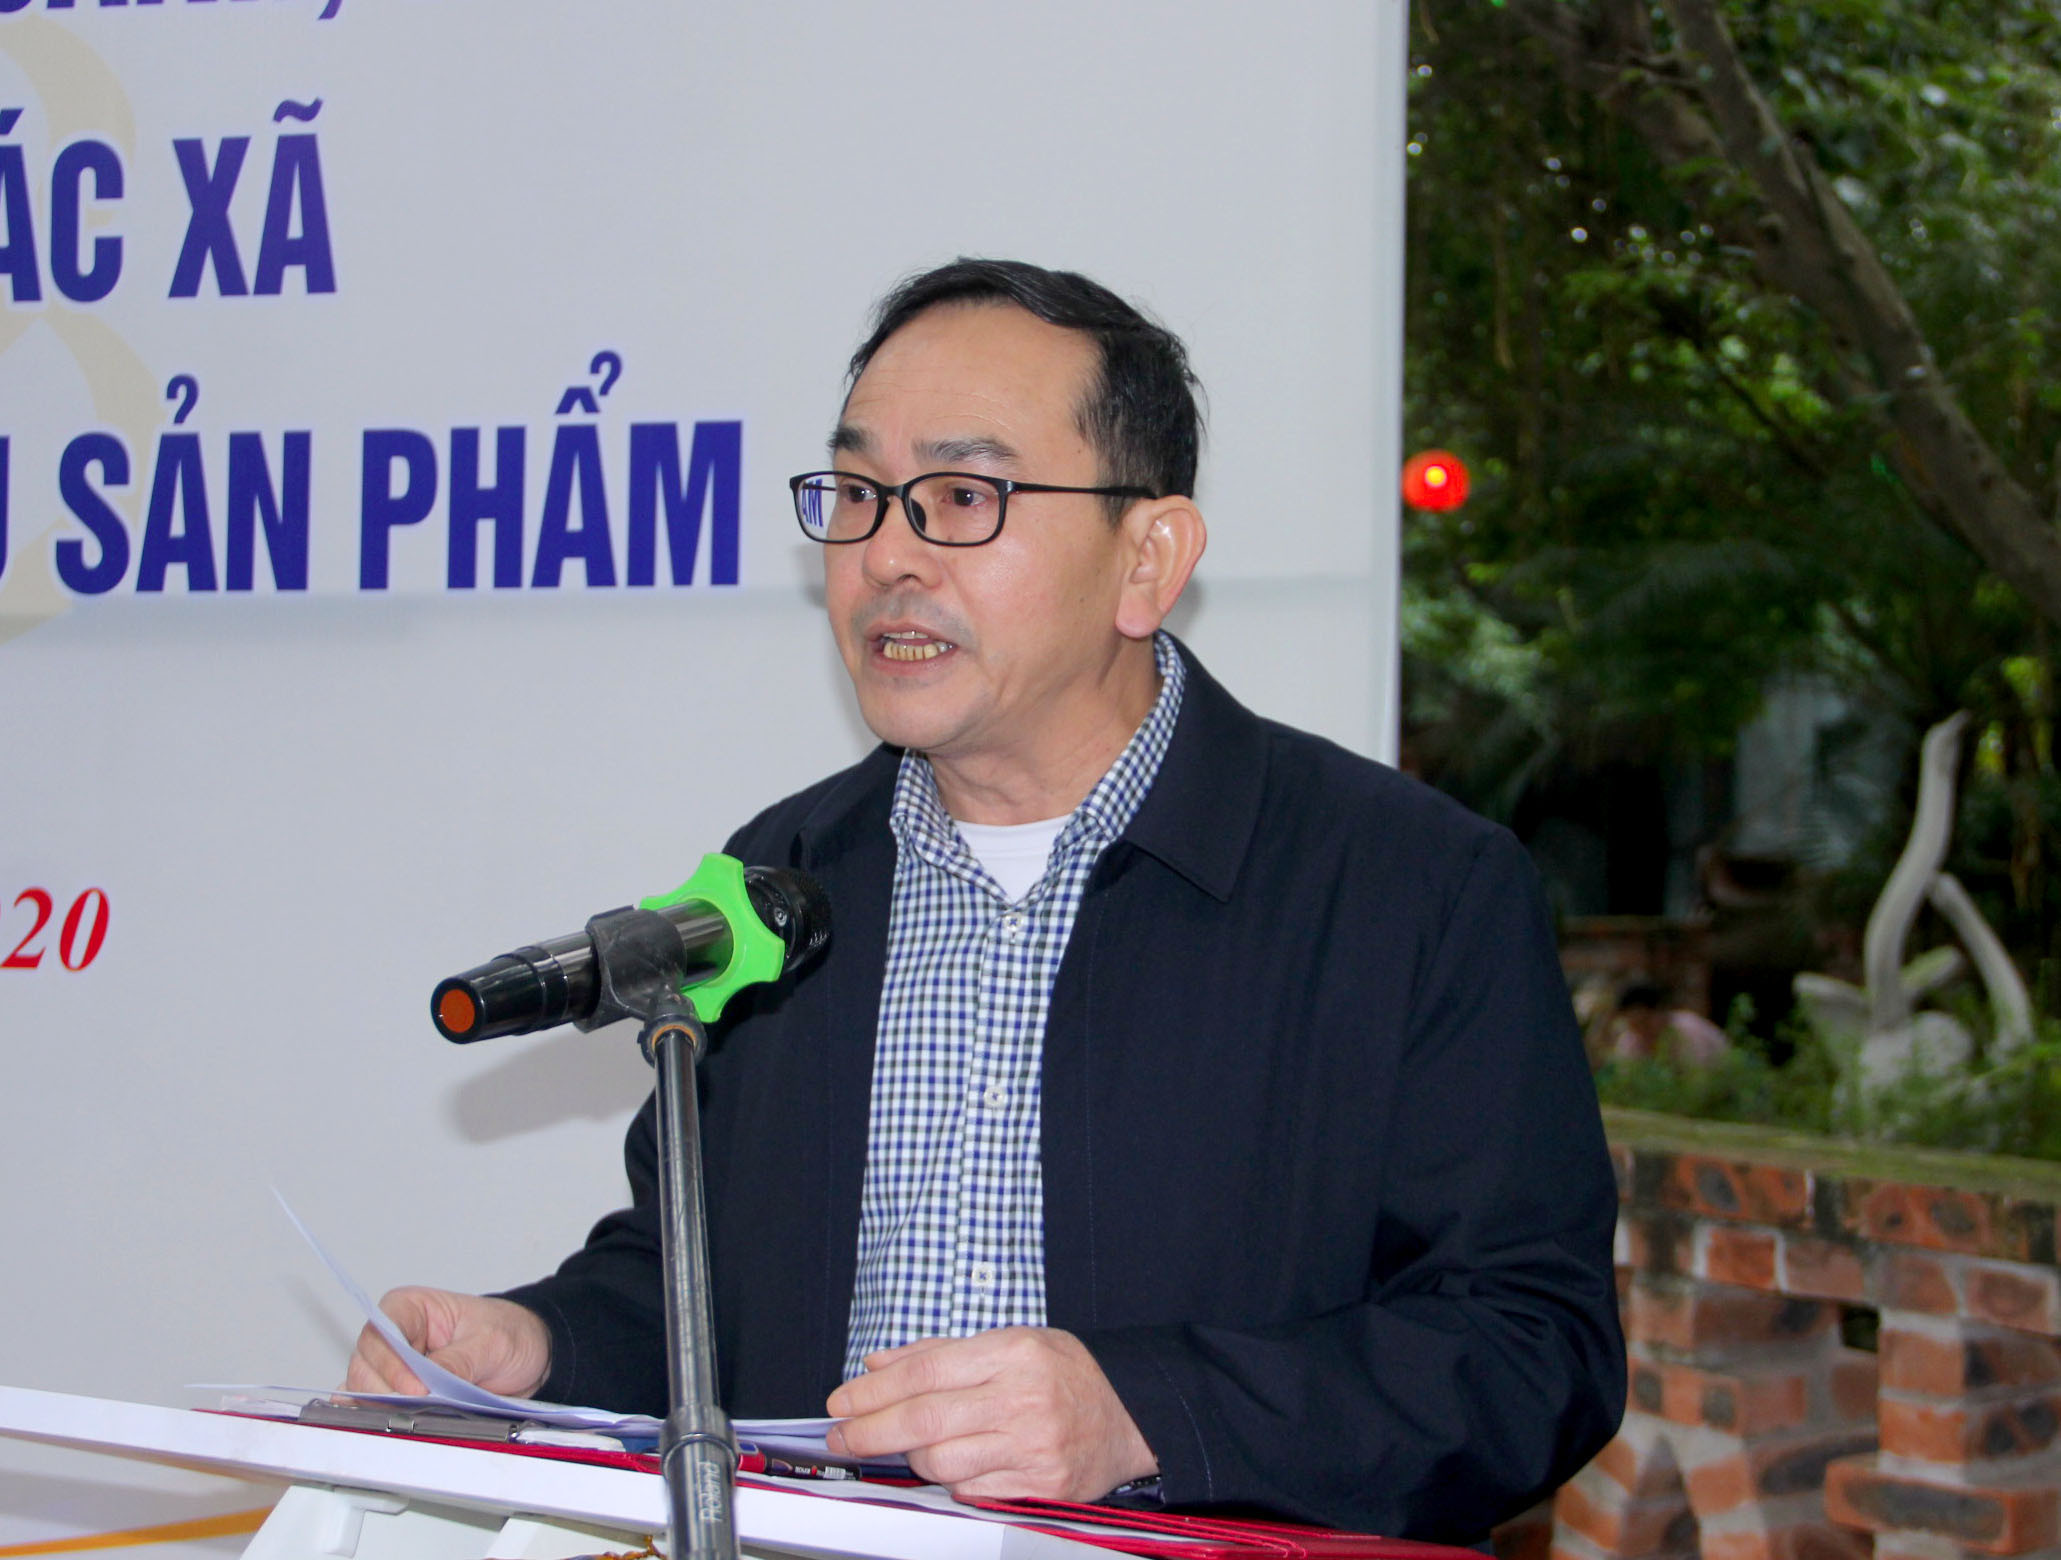 Ông Trần Quang Lâm - Phó Chủ tịch UBND TP Vinh phát biểu tại buổi lễ. Ảnh: Quang An